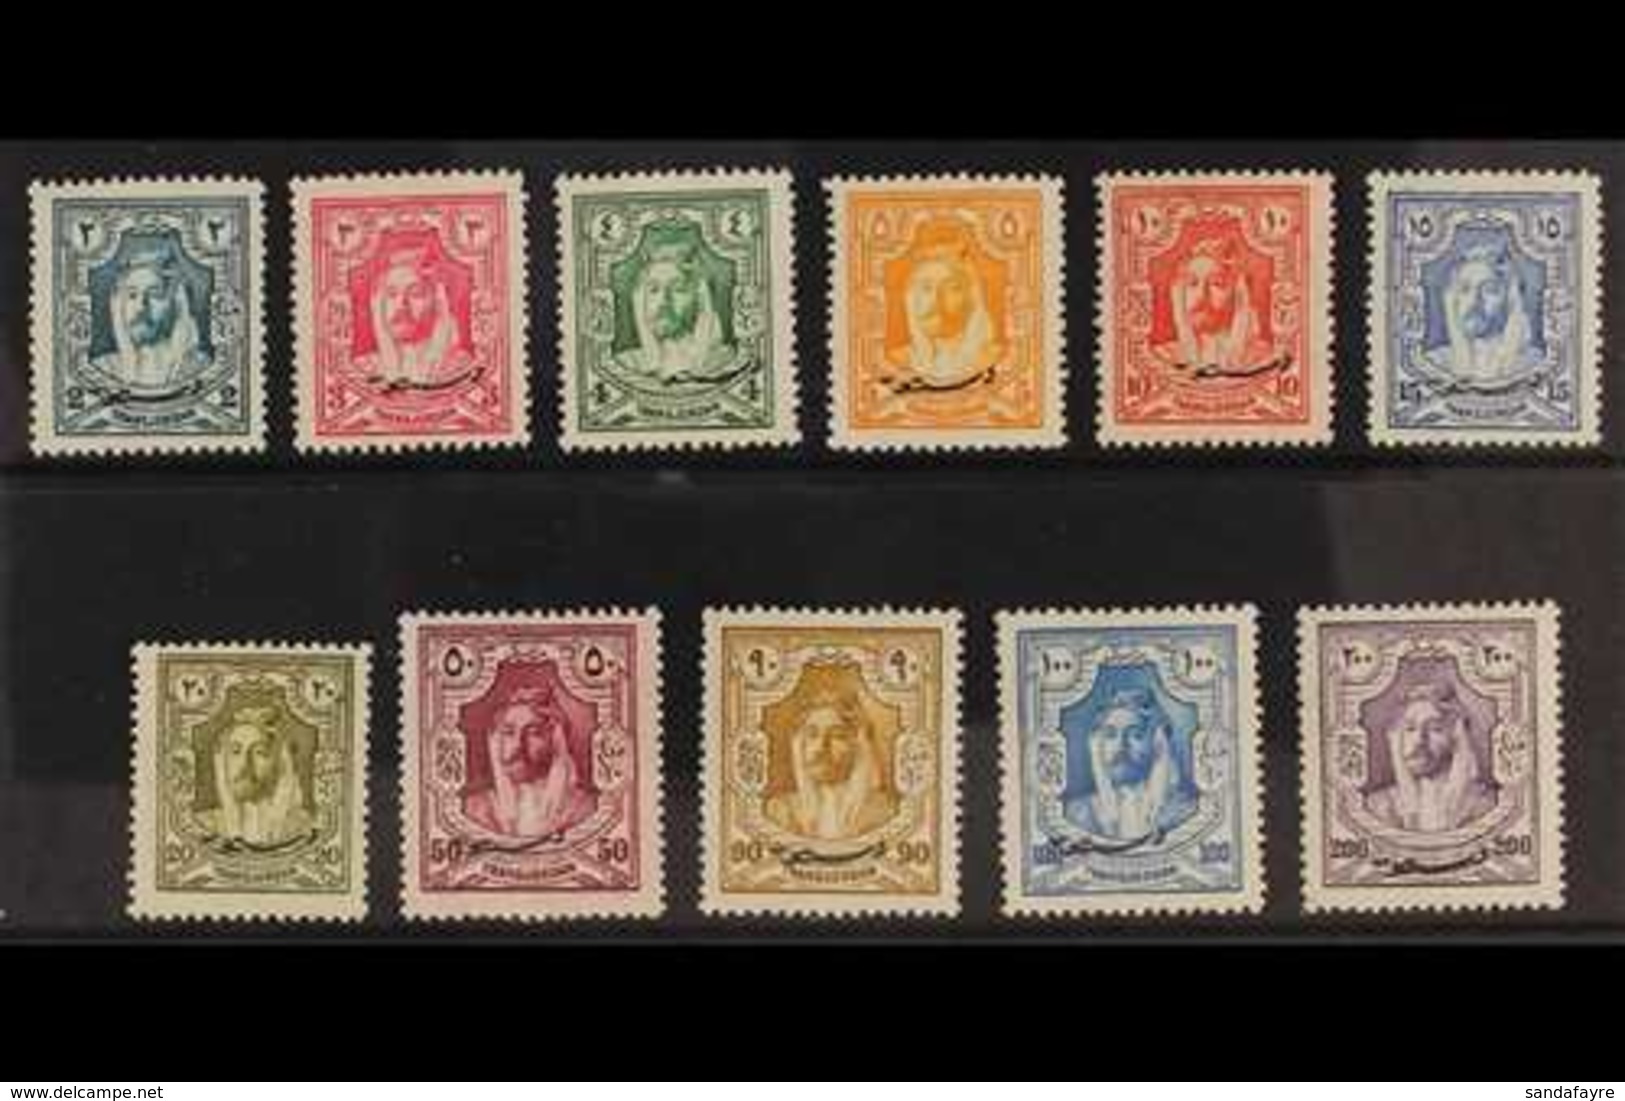 1928 New Constitution Overprints Complete Set, SG 172/82, Superb Mint, Very Fresh. (12 Stamps) For More Images, Please V - Jordan